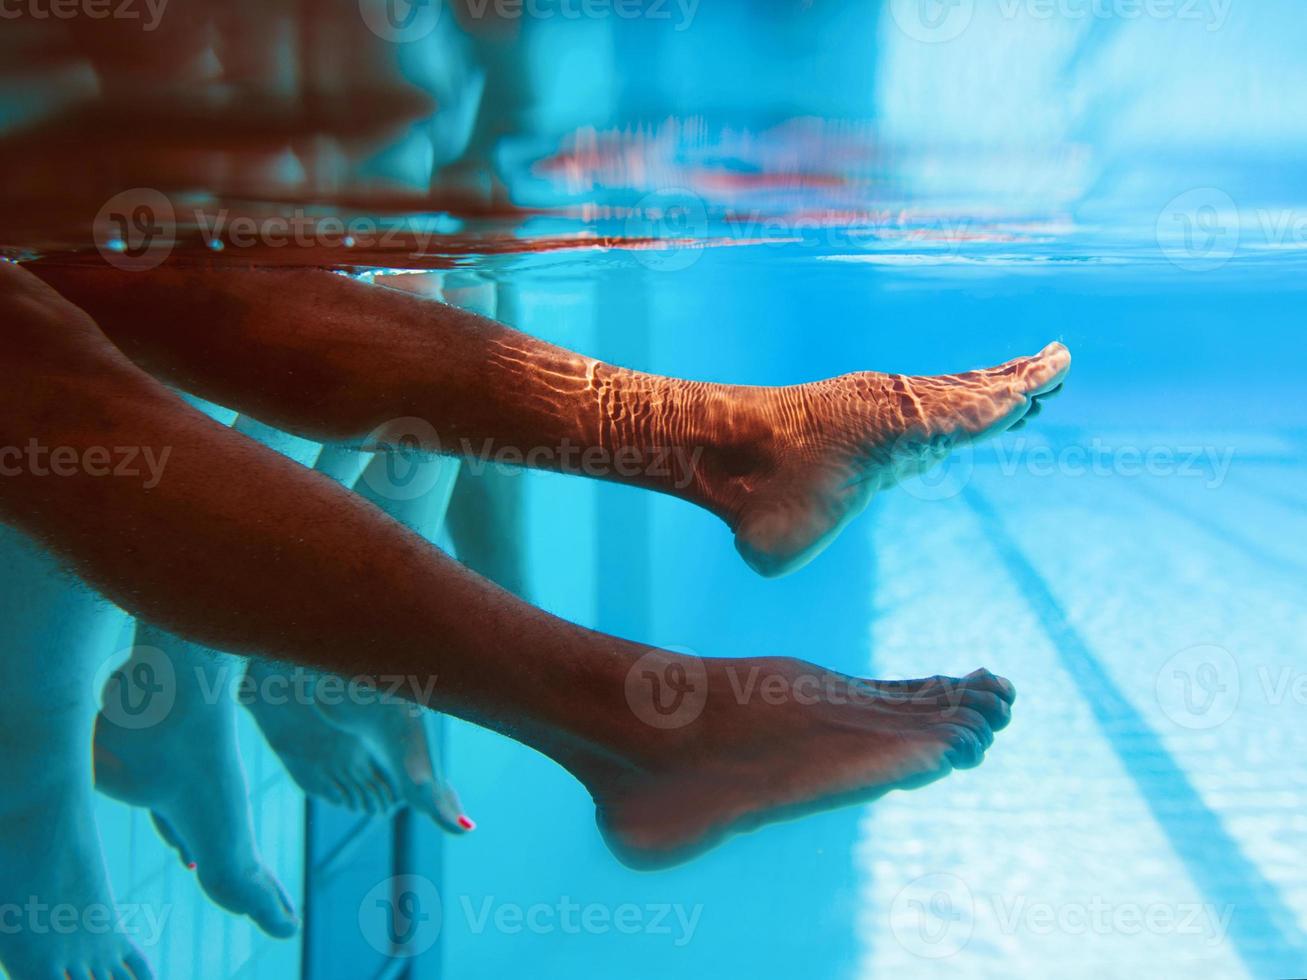 benen van Afro-Amerikaanse man met blanke vrienden in zwembad onder water. zomer. vakantie, internationaal en sportconcept. foto